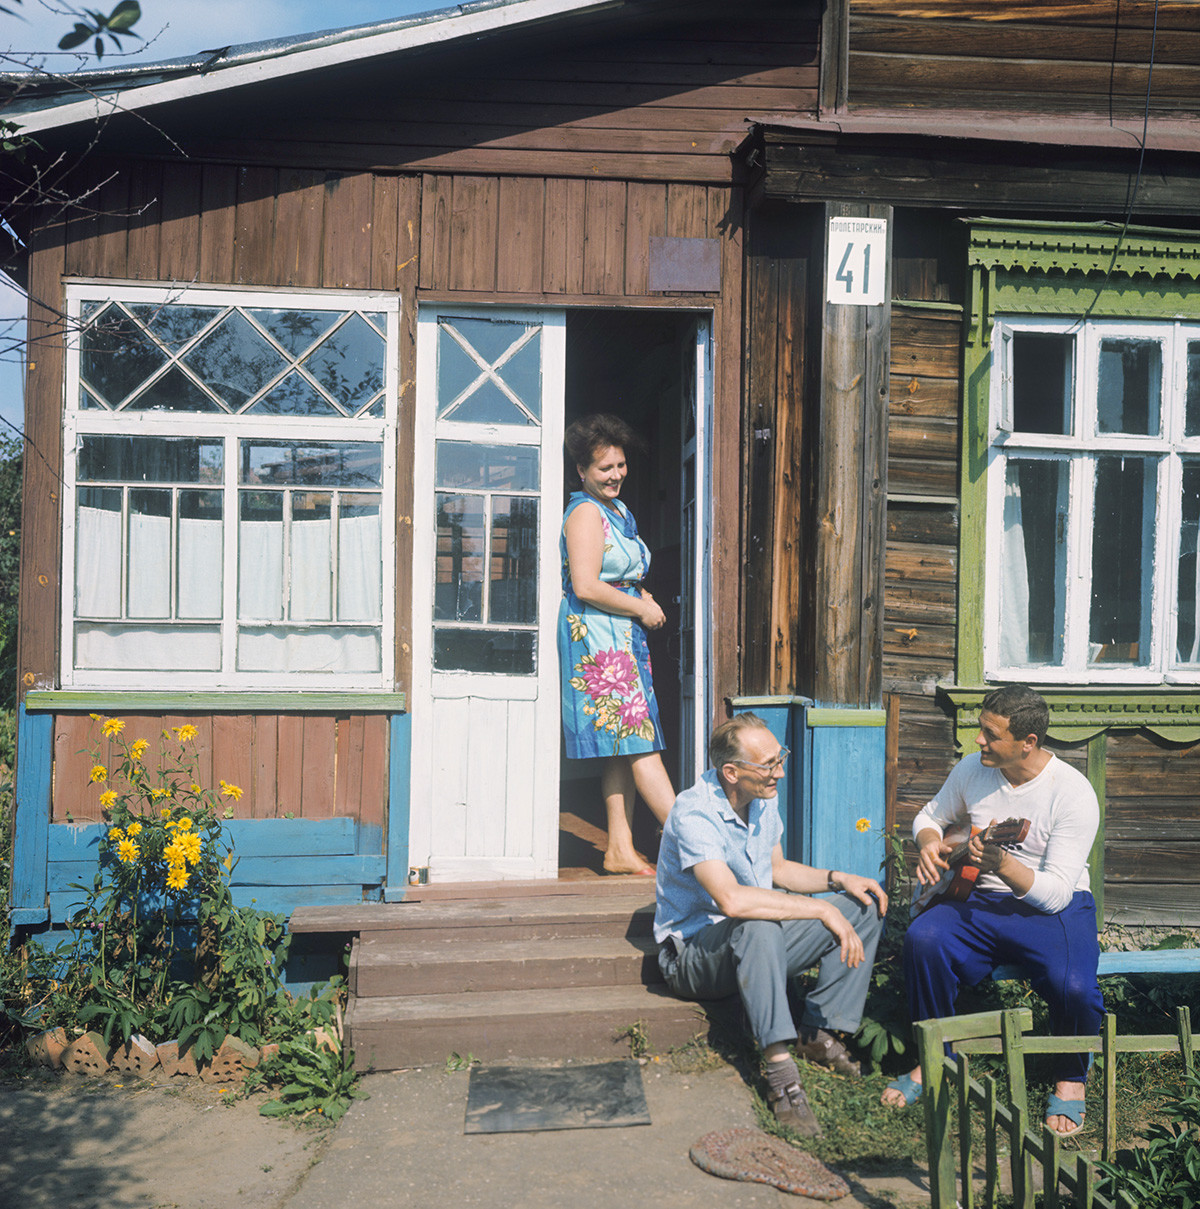 Le cosmonaute soviétique Vladislav Volkov dans sa datcha avec sa femme et son beau-père
